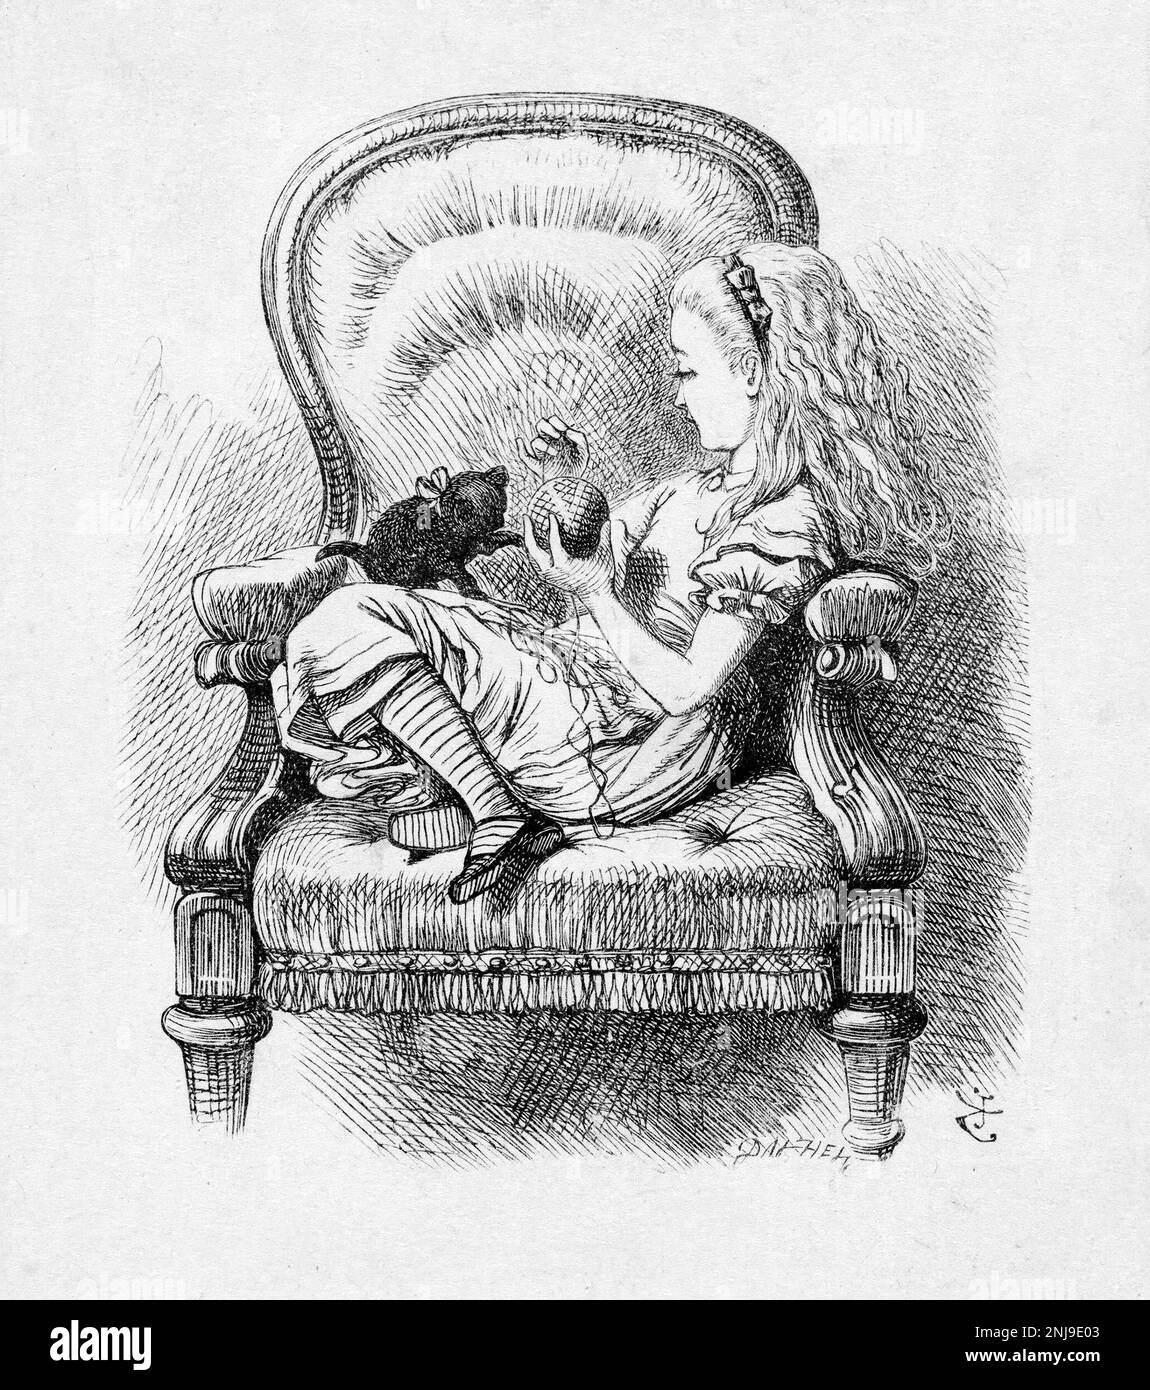 Alice et The Black Kitten, une illustration de Sir John Tenniel pour Lewis Carroll, « Through the look-Glass, and What Alice y trouva », gravure en bois, 1872 Banque D'Images